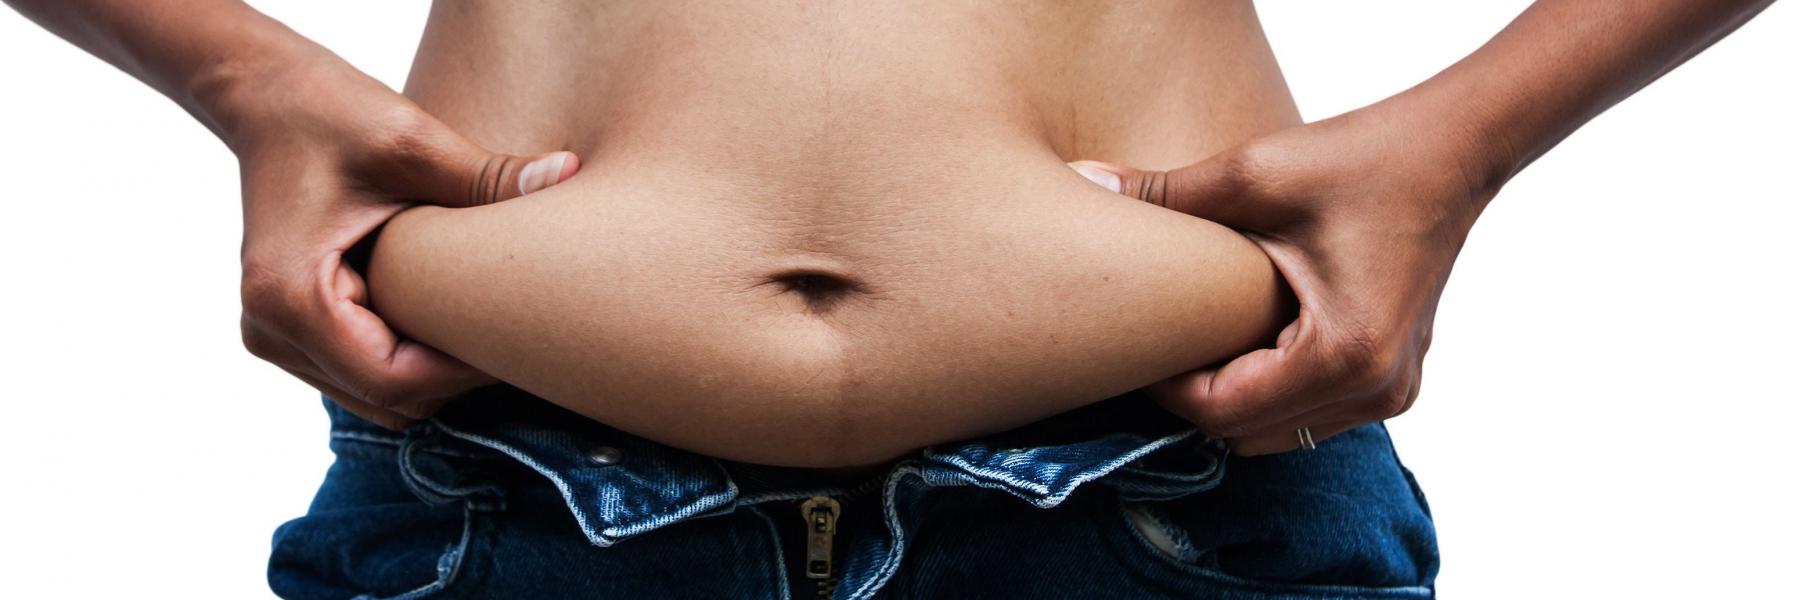 7 عادات صباحية خاطئة تسبب زيادة الوزن